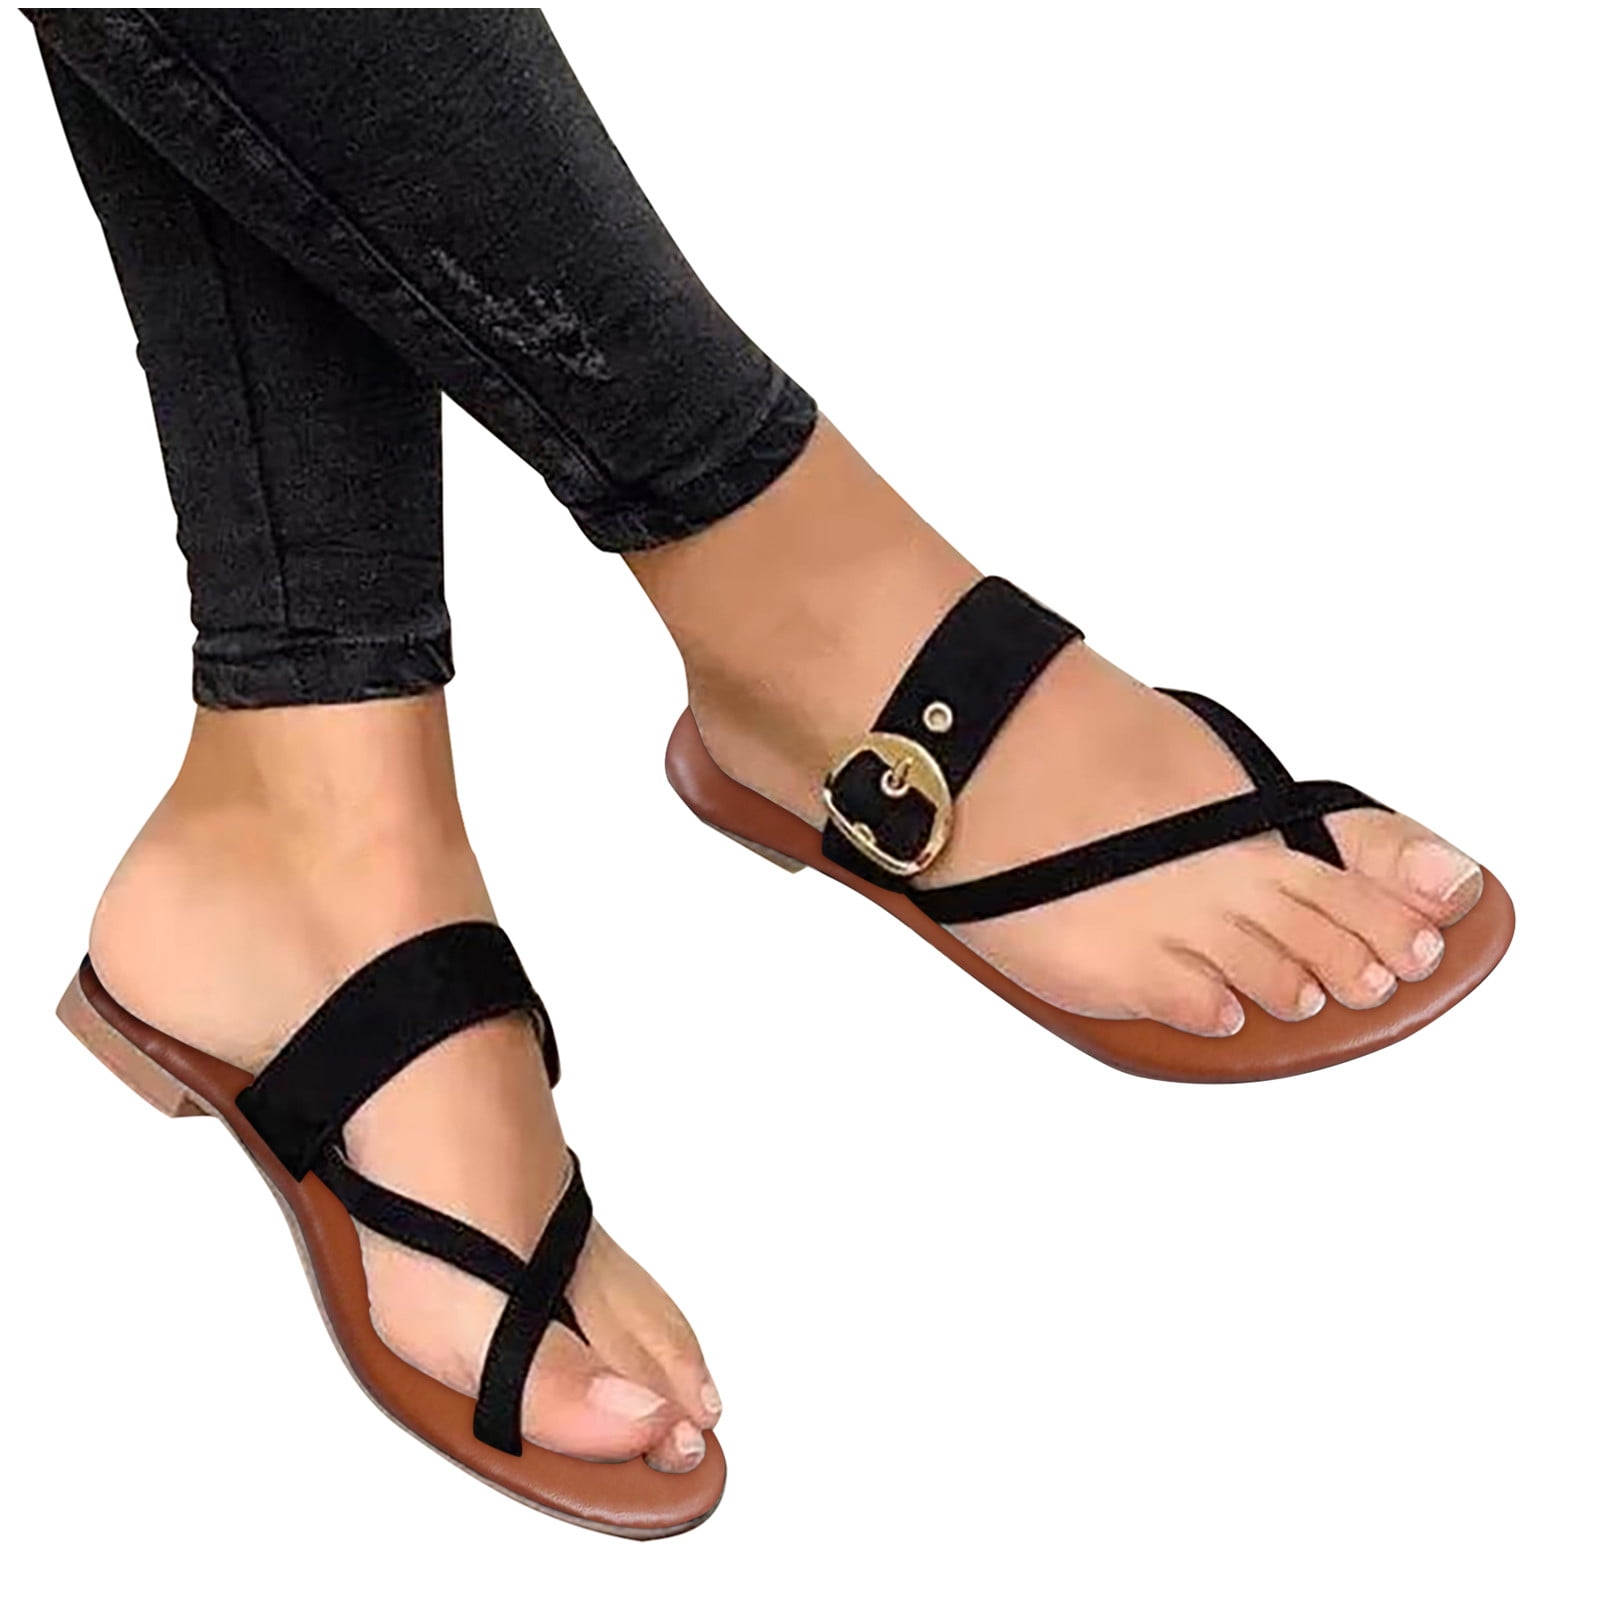 Barefoot Sandals - Be Lenka Claire - Black | Be Lenka-hkpdtq2012.edu.vn